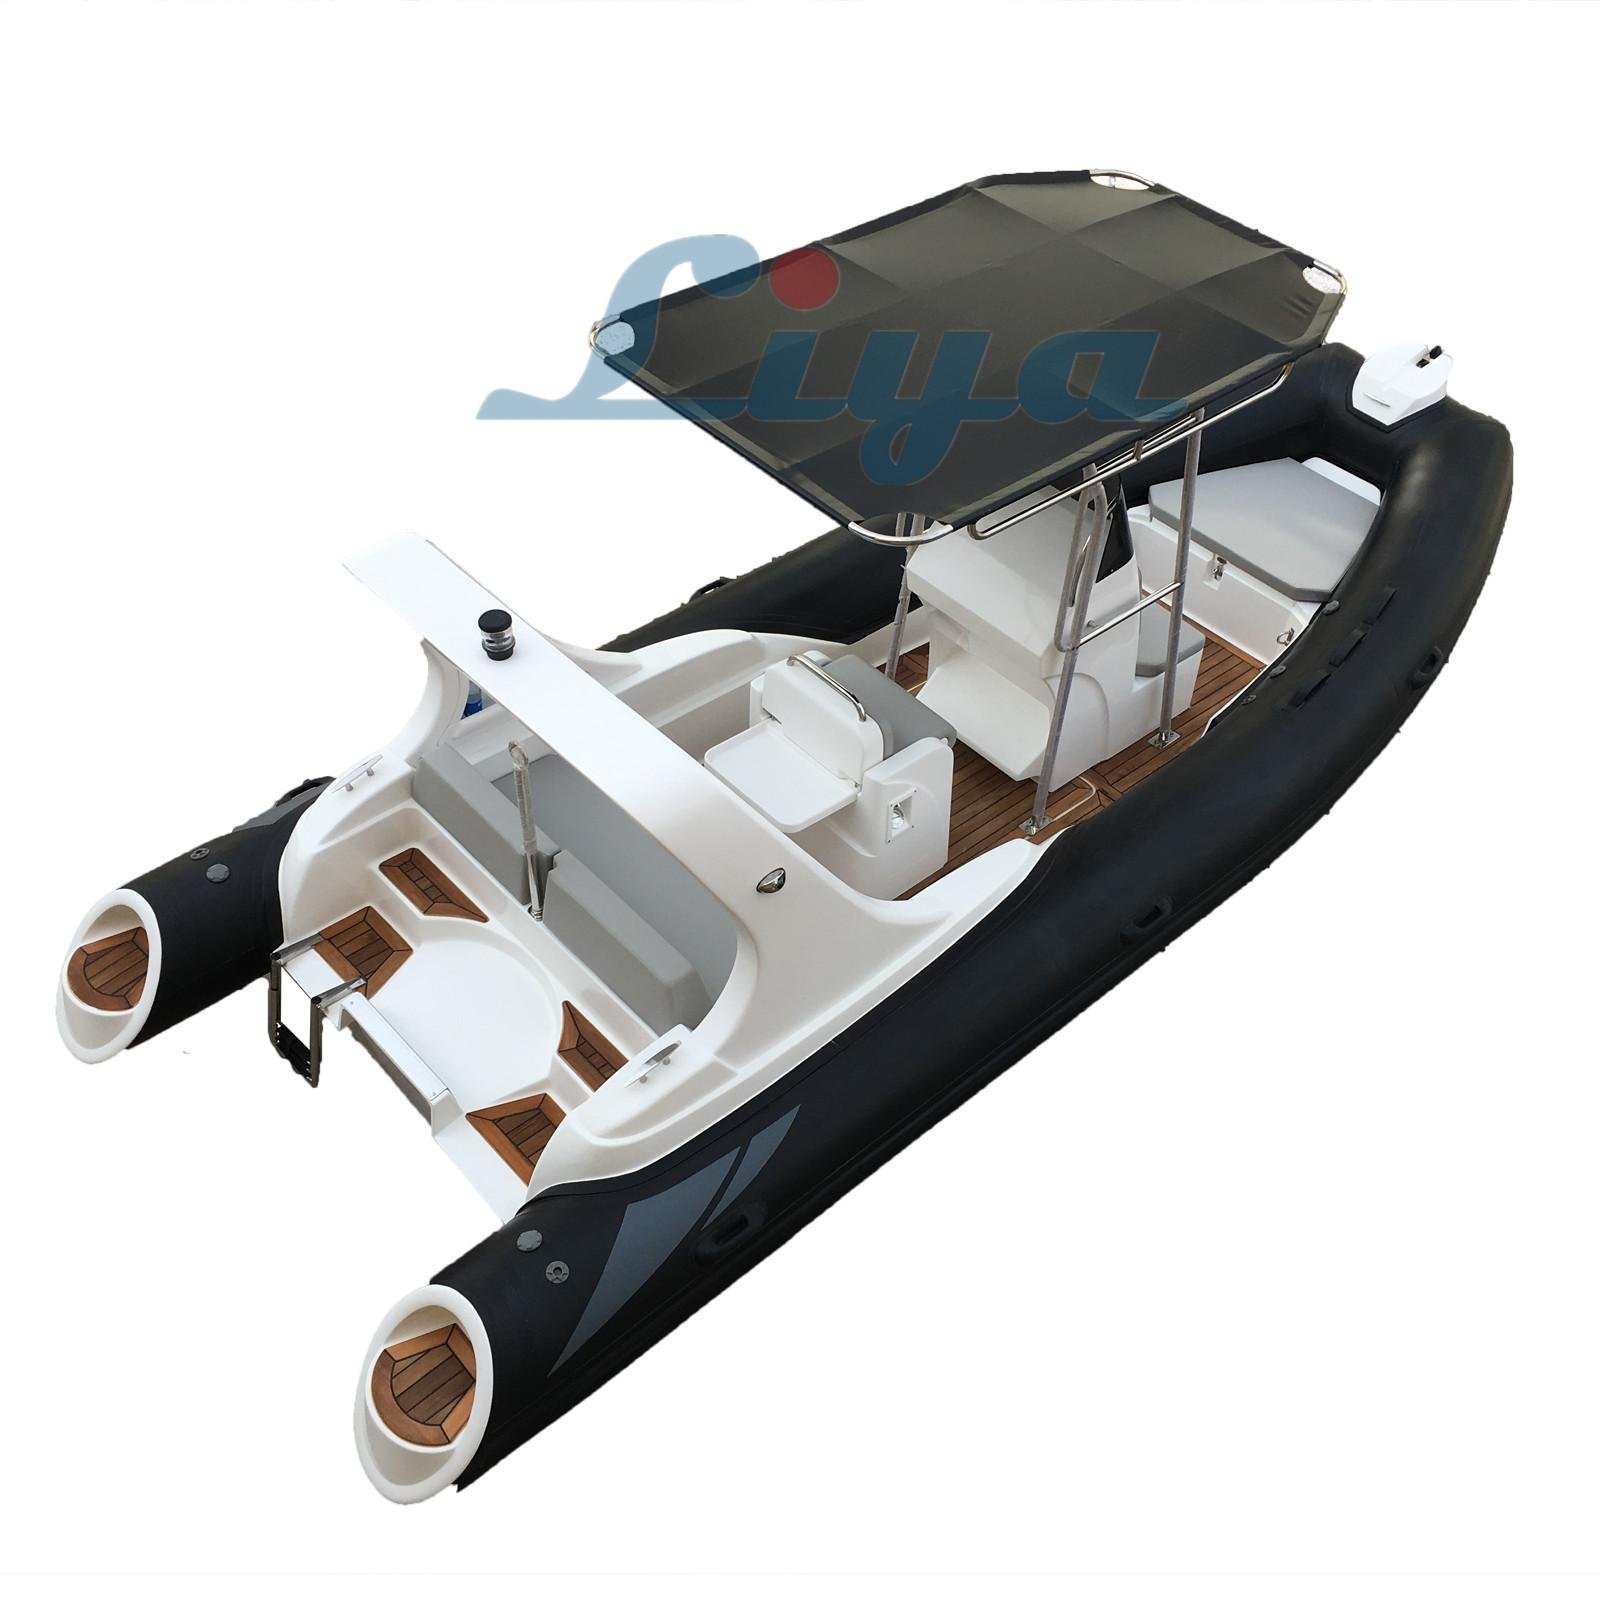 Liya 5.8m/19ft rib boat rigid inflatable boat 